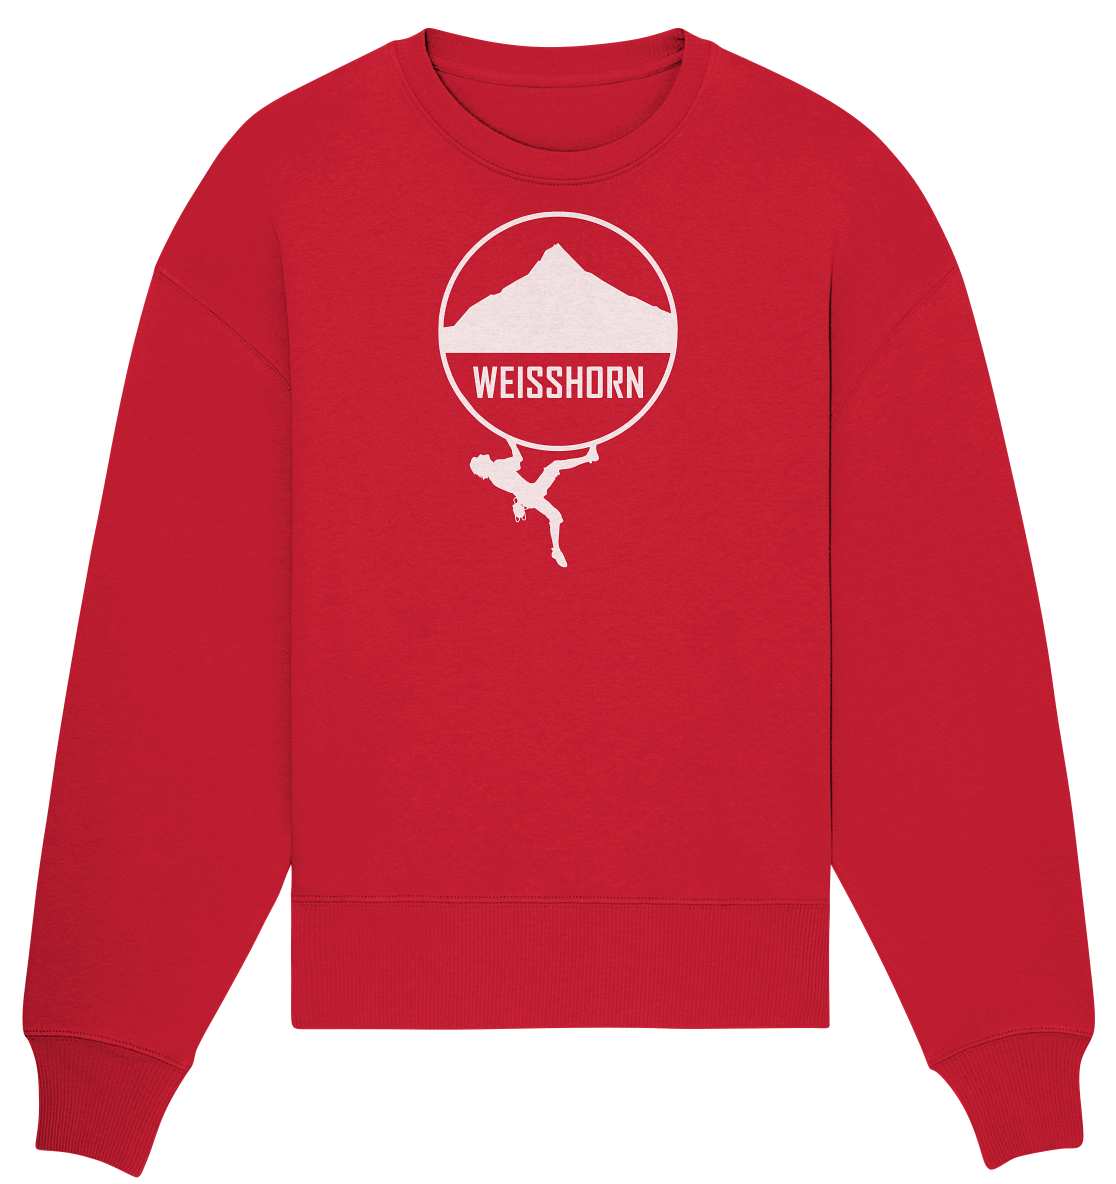 Weisshorn Climber - Organic Oversize Sweatshirt